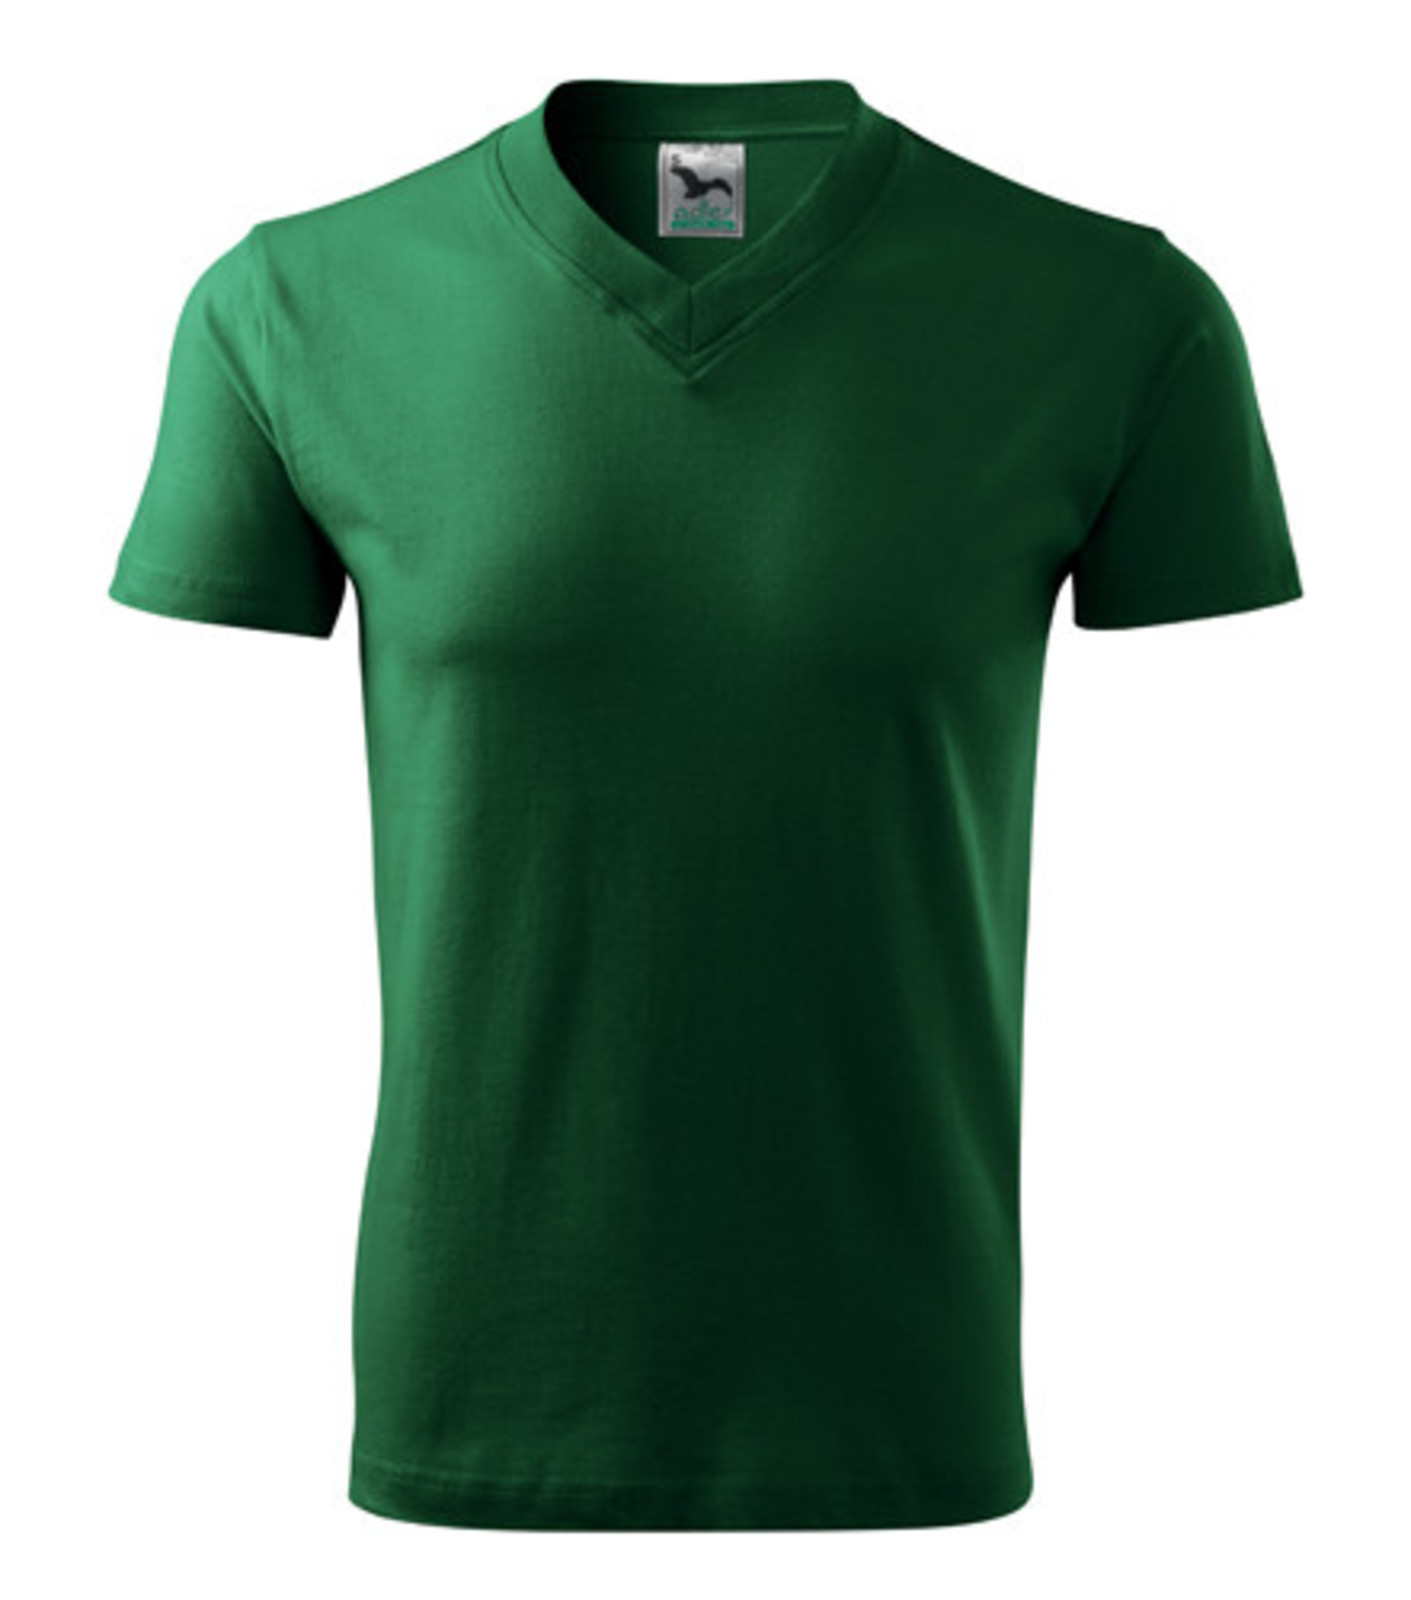 Unisex tričko s výstrihom Adler V-Neck 102 - veľkosť: M, farba: fľašková zelená